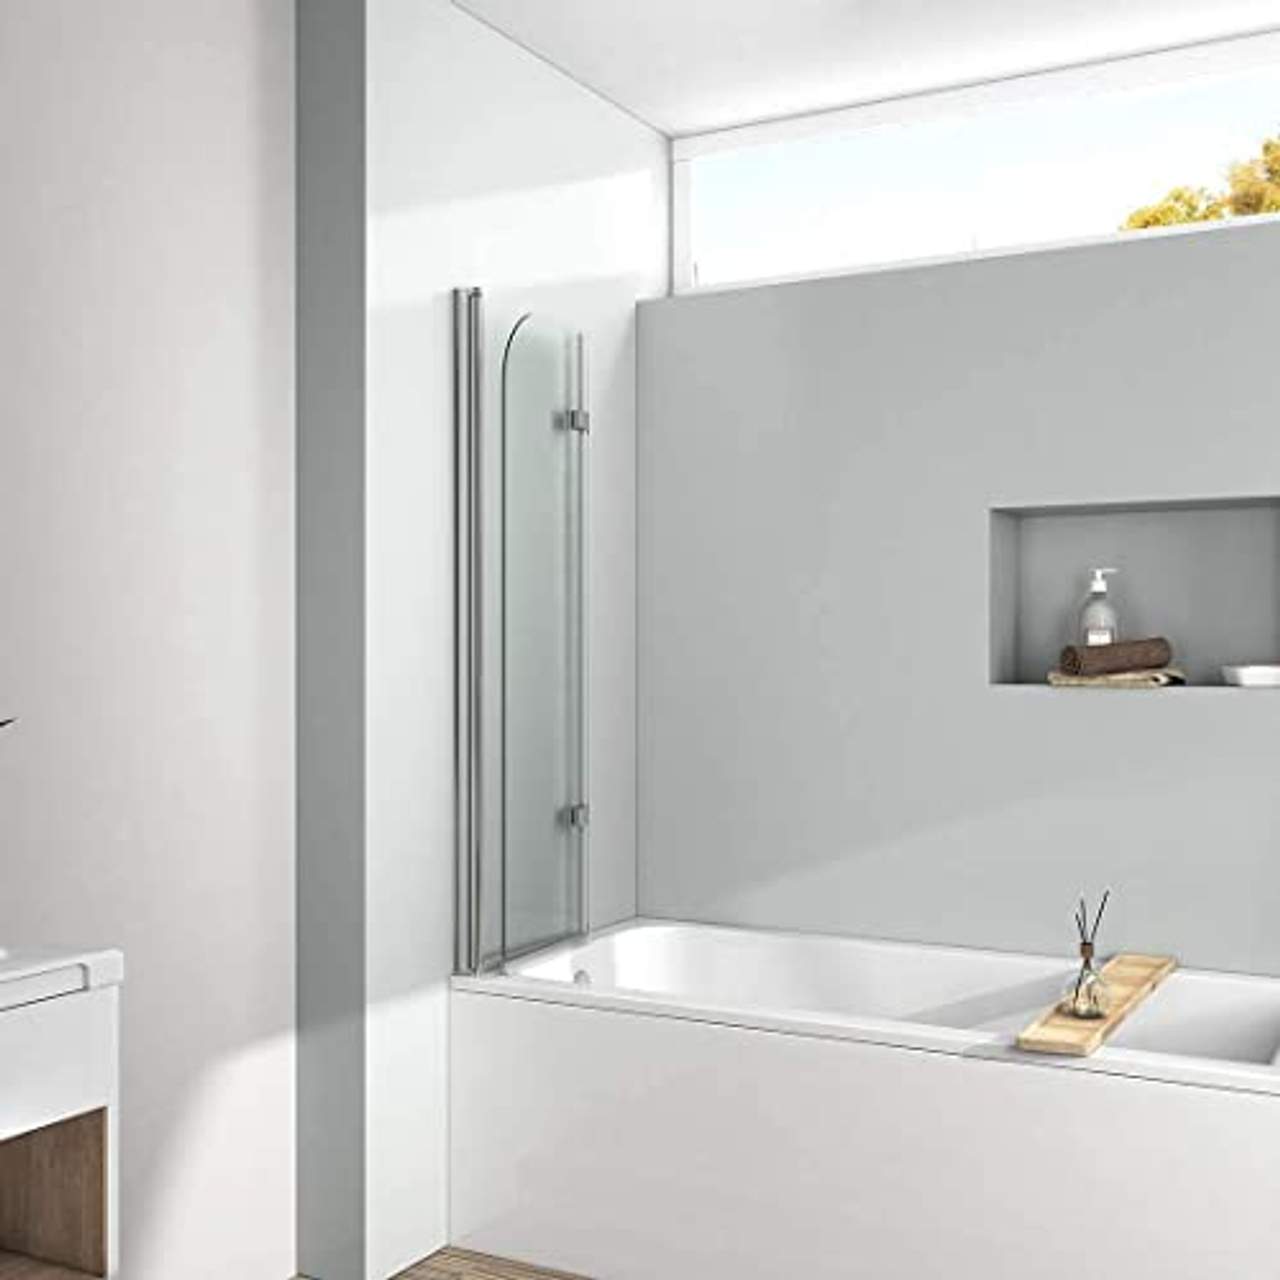 EMKE 110x140cm Duschtrennwand für Badewanne Faltwand Duschabtrennung Badewannenaufsatz